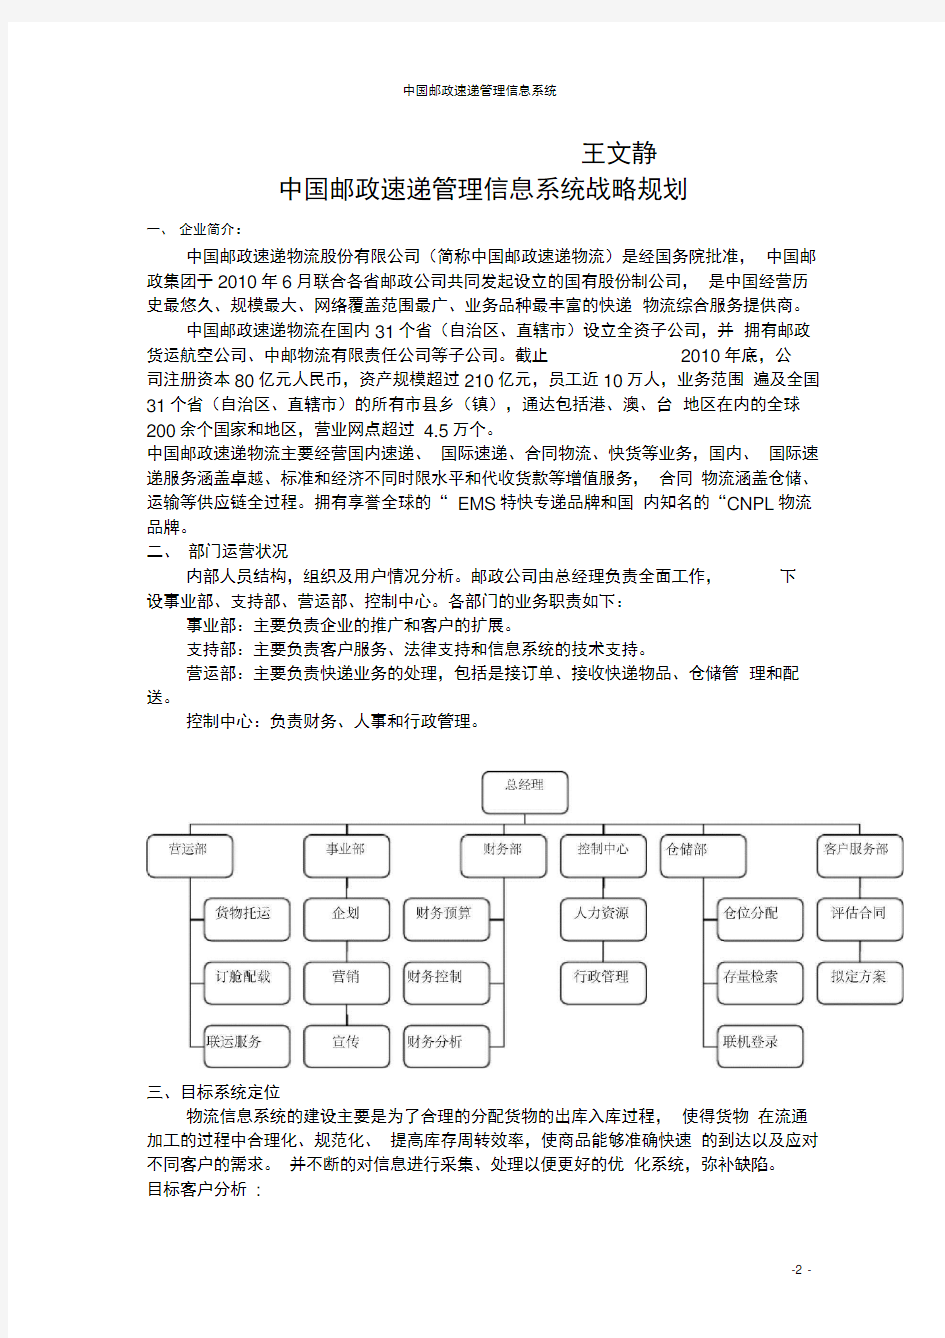 (完整word版)中国邮政速递管理信息管理系统